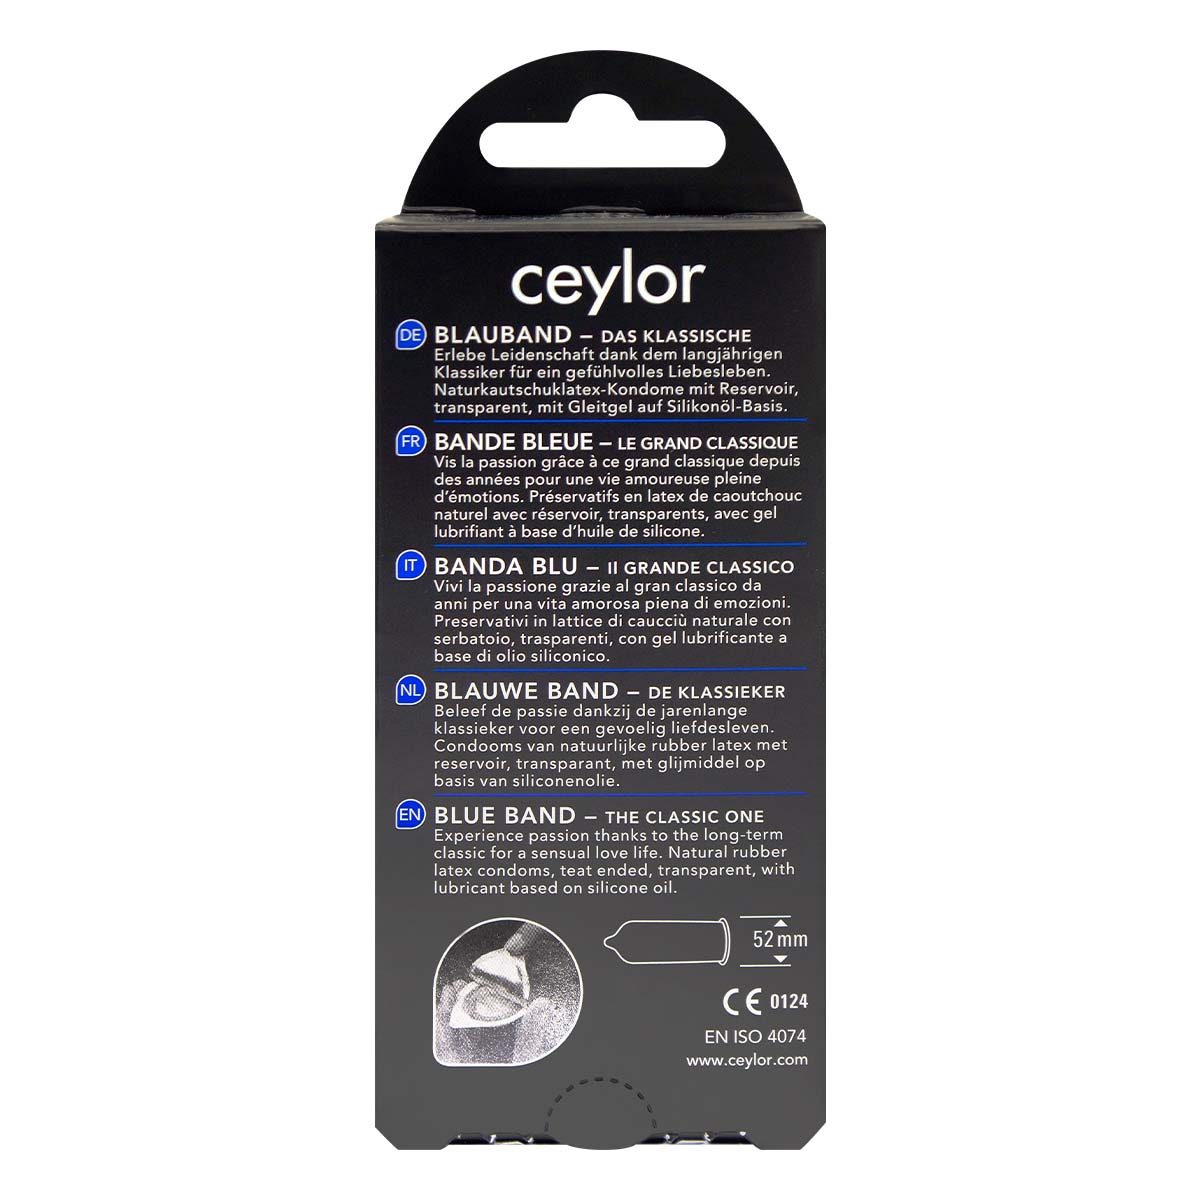 ceylor 藍帶 12 片裝 乳膠安全套-p_3